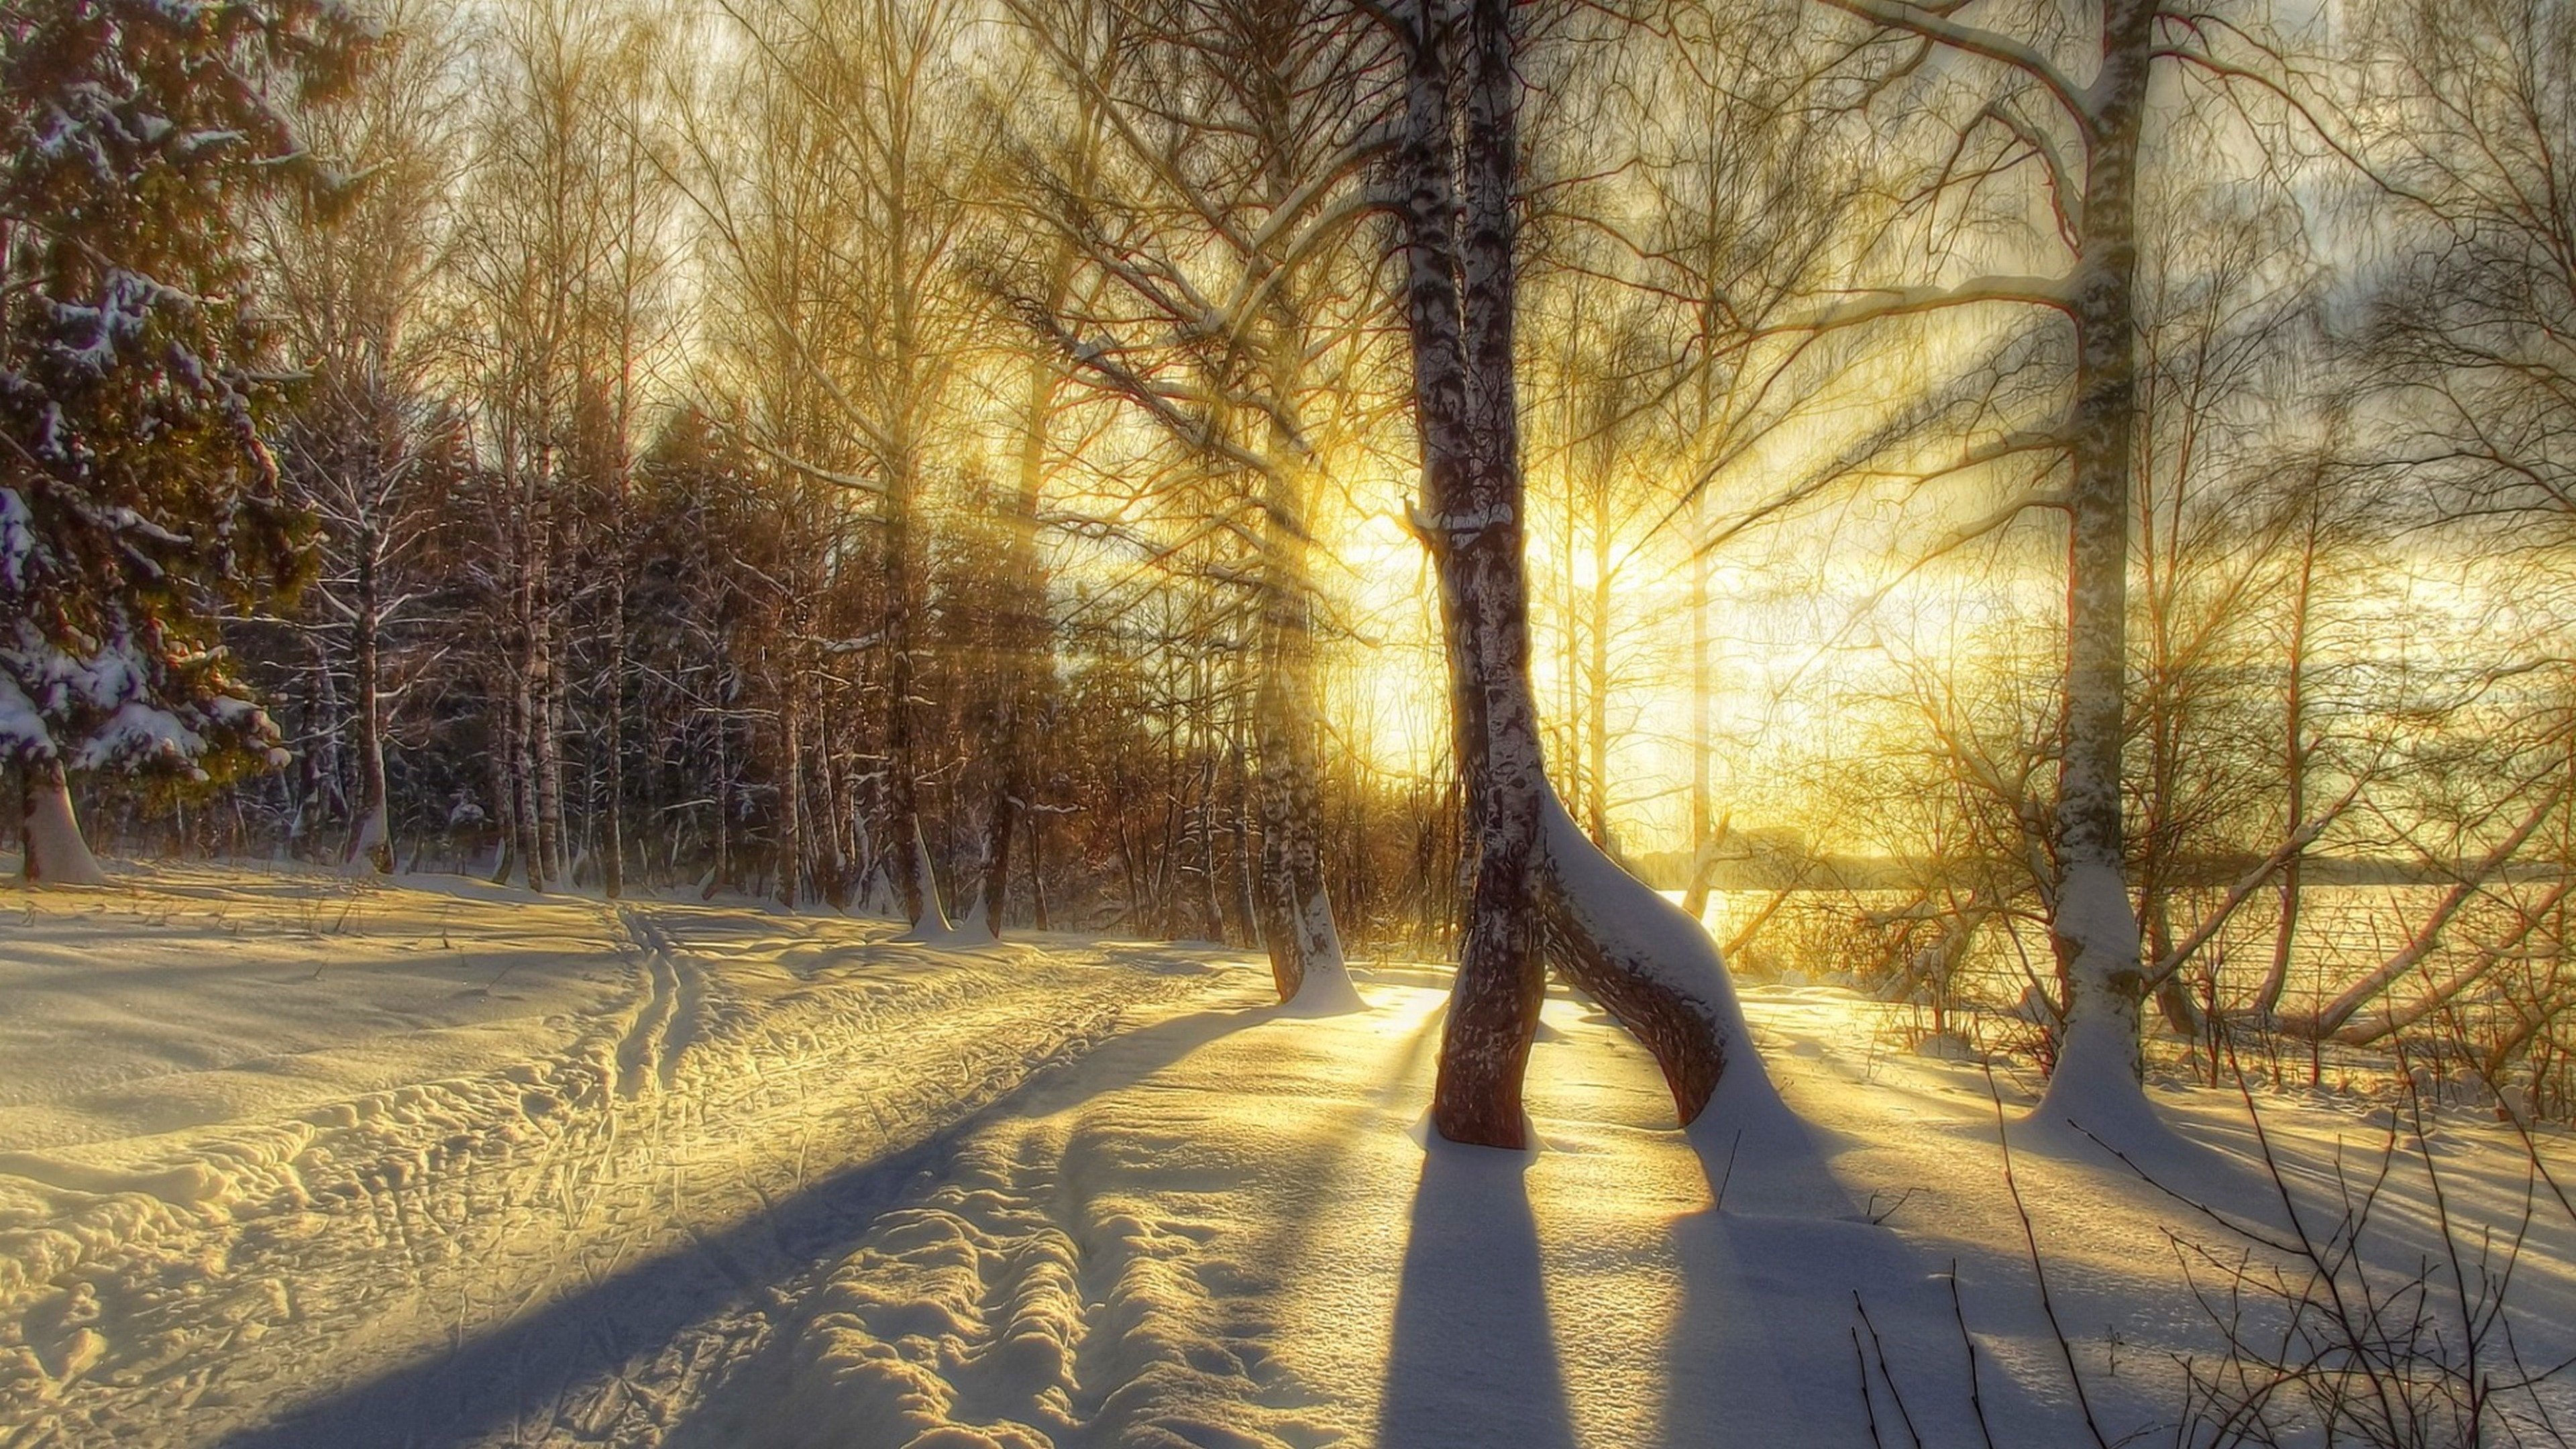 Зимнее утро дорога. Зимний лес. Зимний пейзаж. Зима солнце. Солнечный зимний день в лесу.